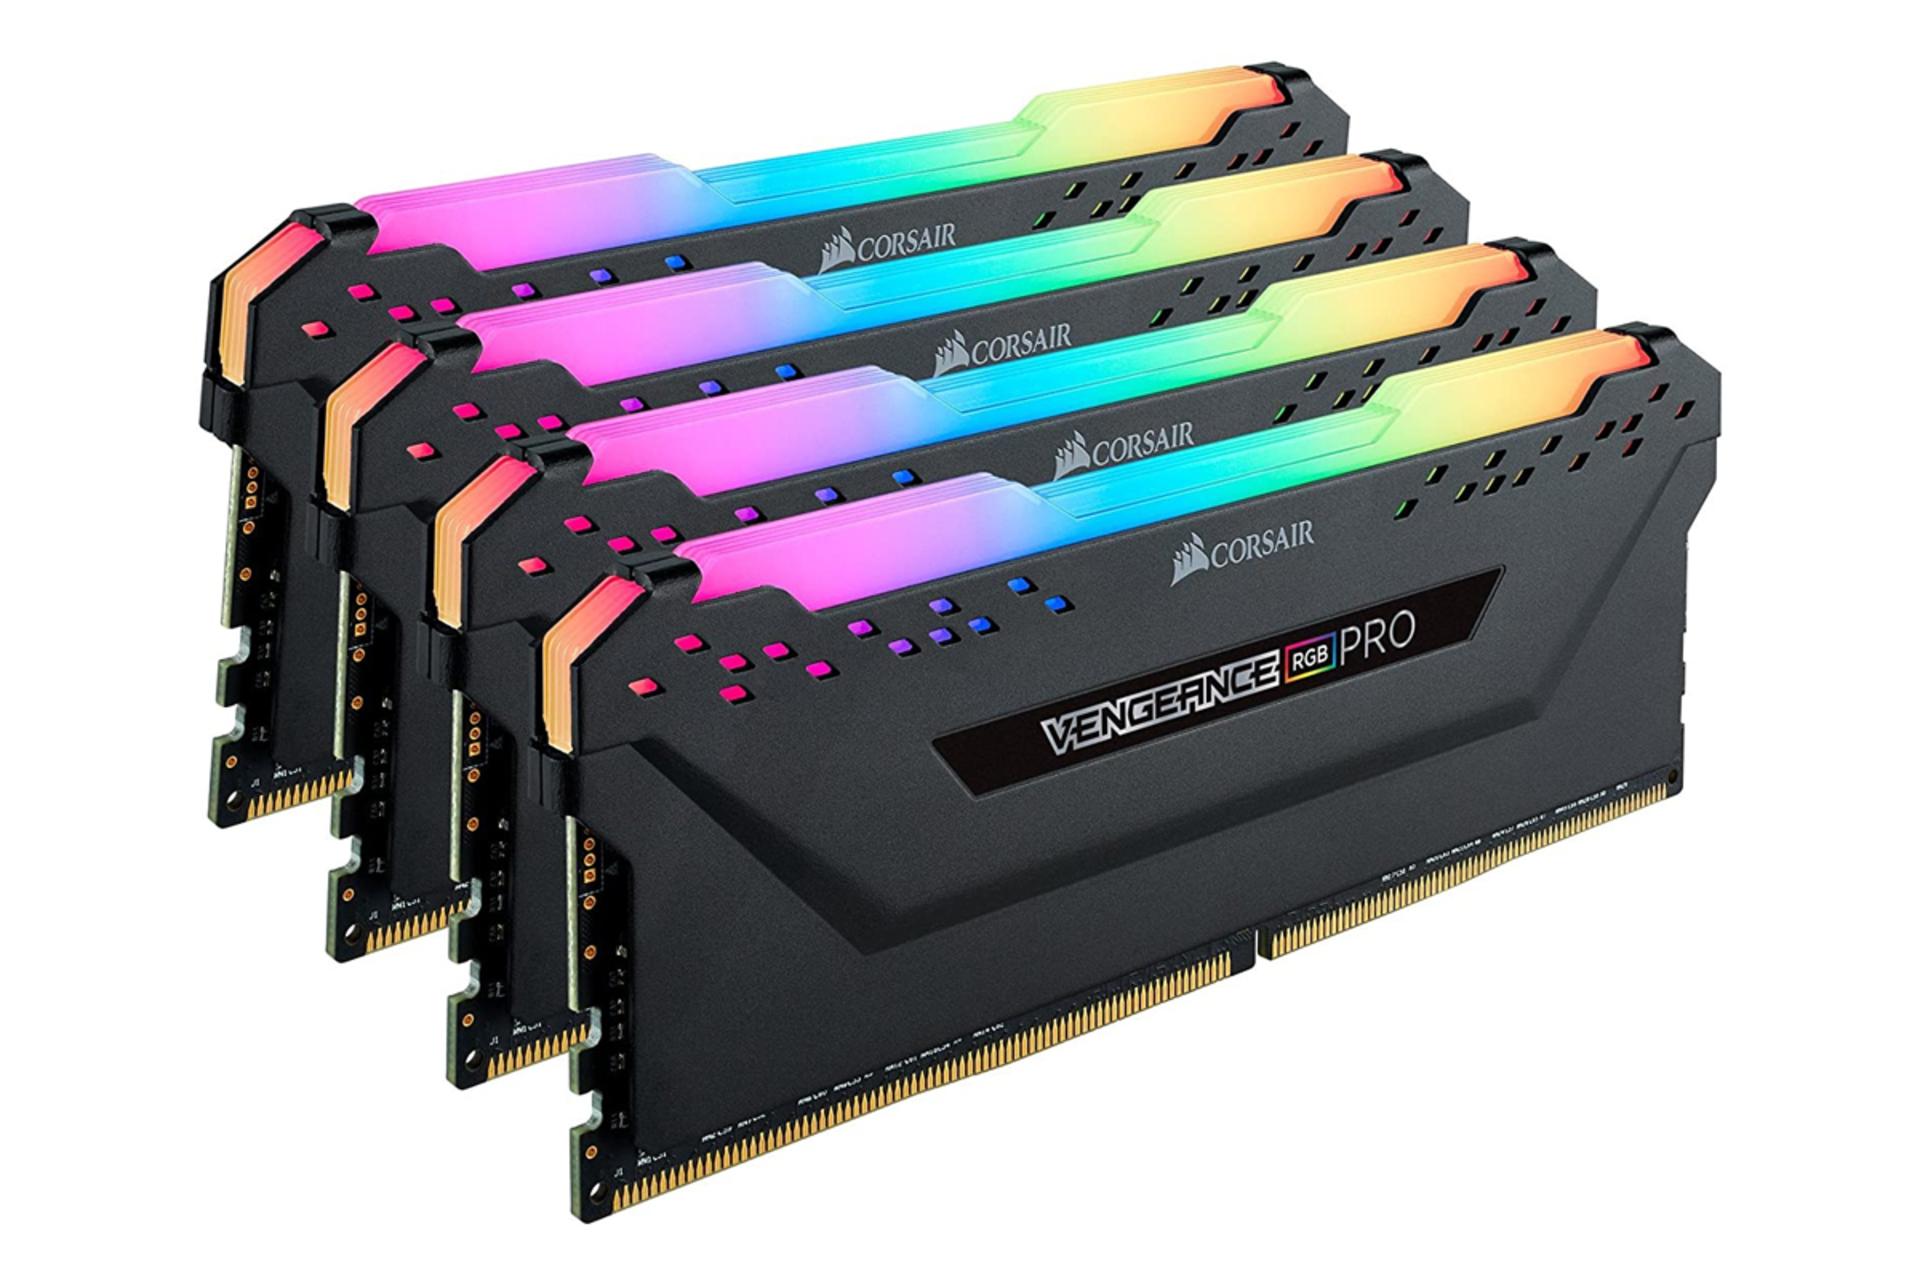 نمای جلو کناری کورسیر VENGEANCE RGB PRO ظرفیت 64 گیگابایت (4x16) از نوع DDR4-3600